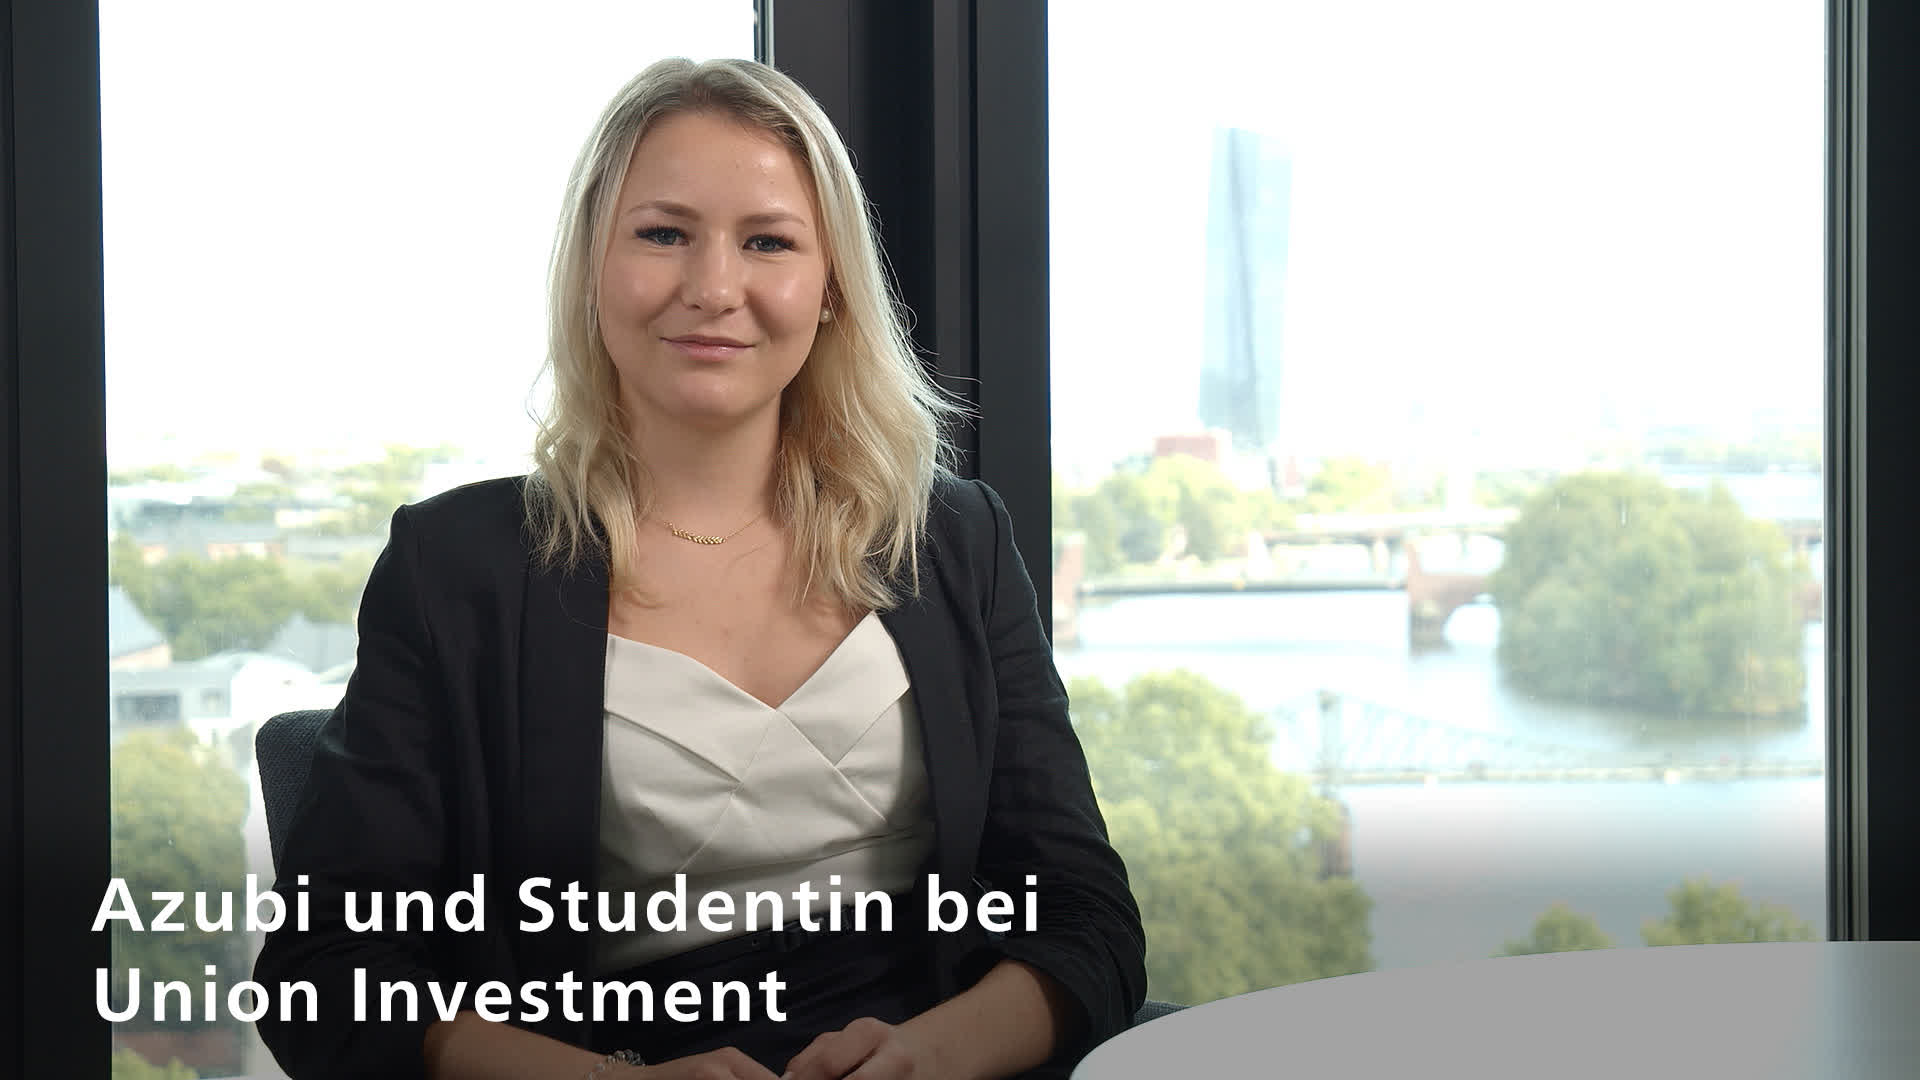 Lisa Brand, Auszubildende und Studentin bei Union Investment